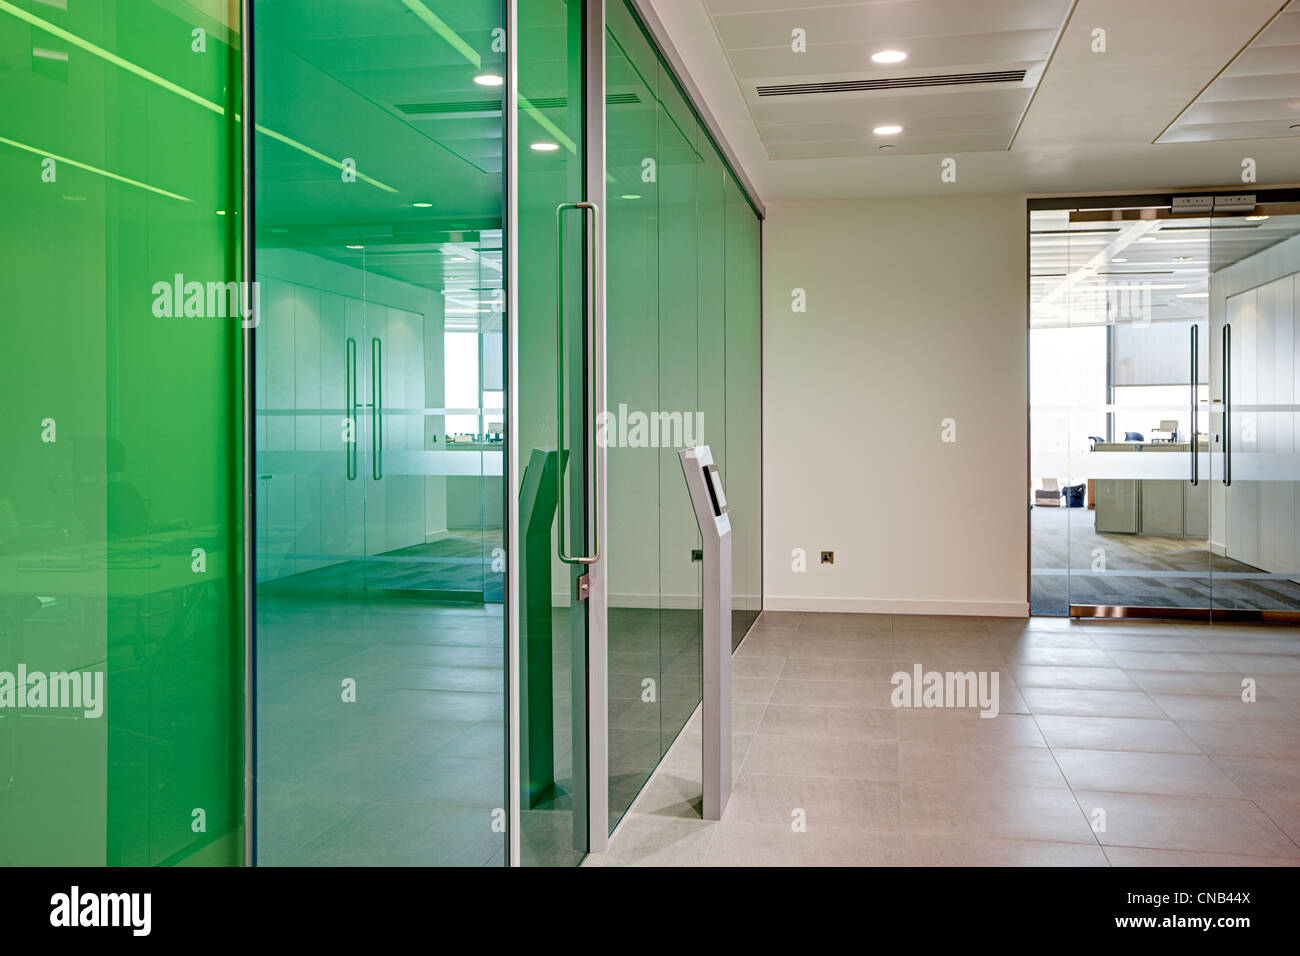 Pared de vidrio verde sala de reuniones oficina banco ciudad Foto de stock